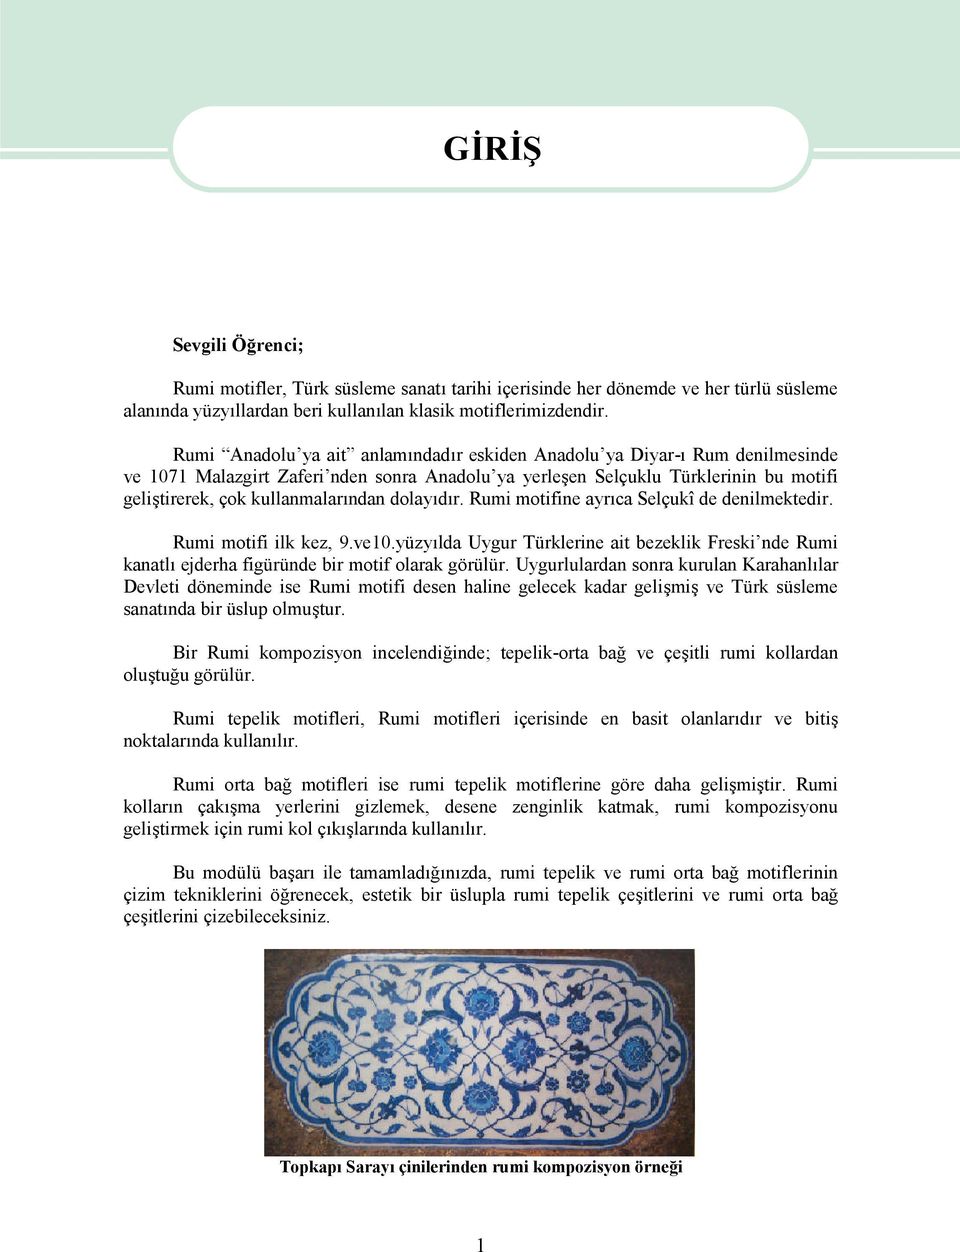 dolayıdır. Rumi motifine ayrıca Selçukî de denilmektedir. Rumi motifi ilk kez, 9.ve10.yüzyılda Uygur Türklerine ait bezeklik Freski nde Rumi kanatlı ejderha figüründe bir motif olarak görülür.